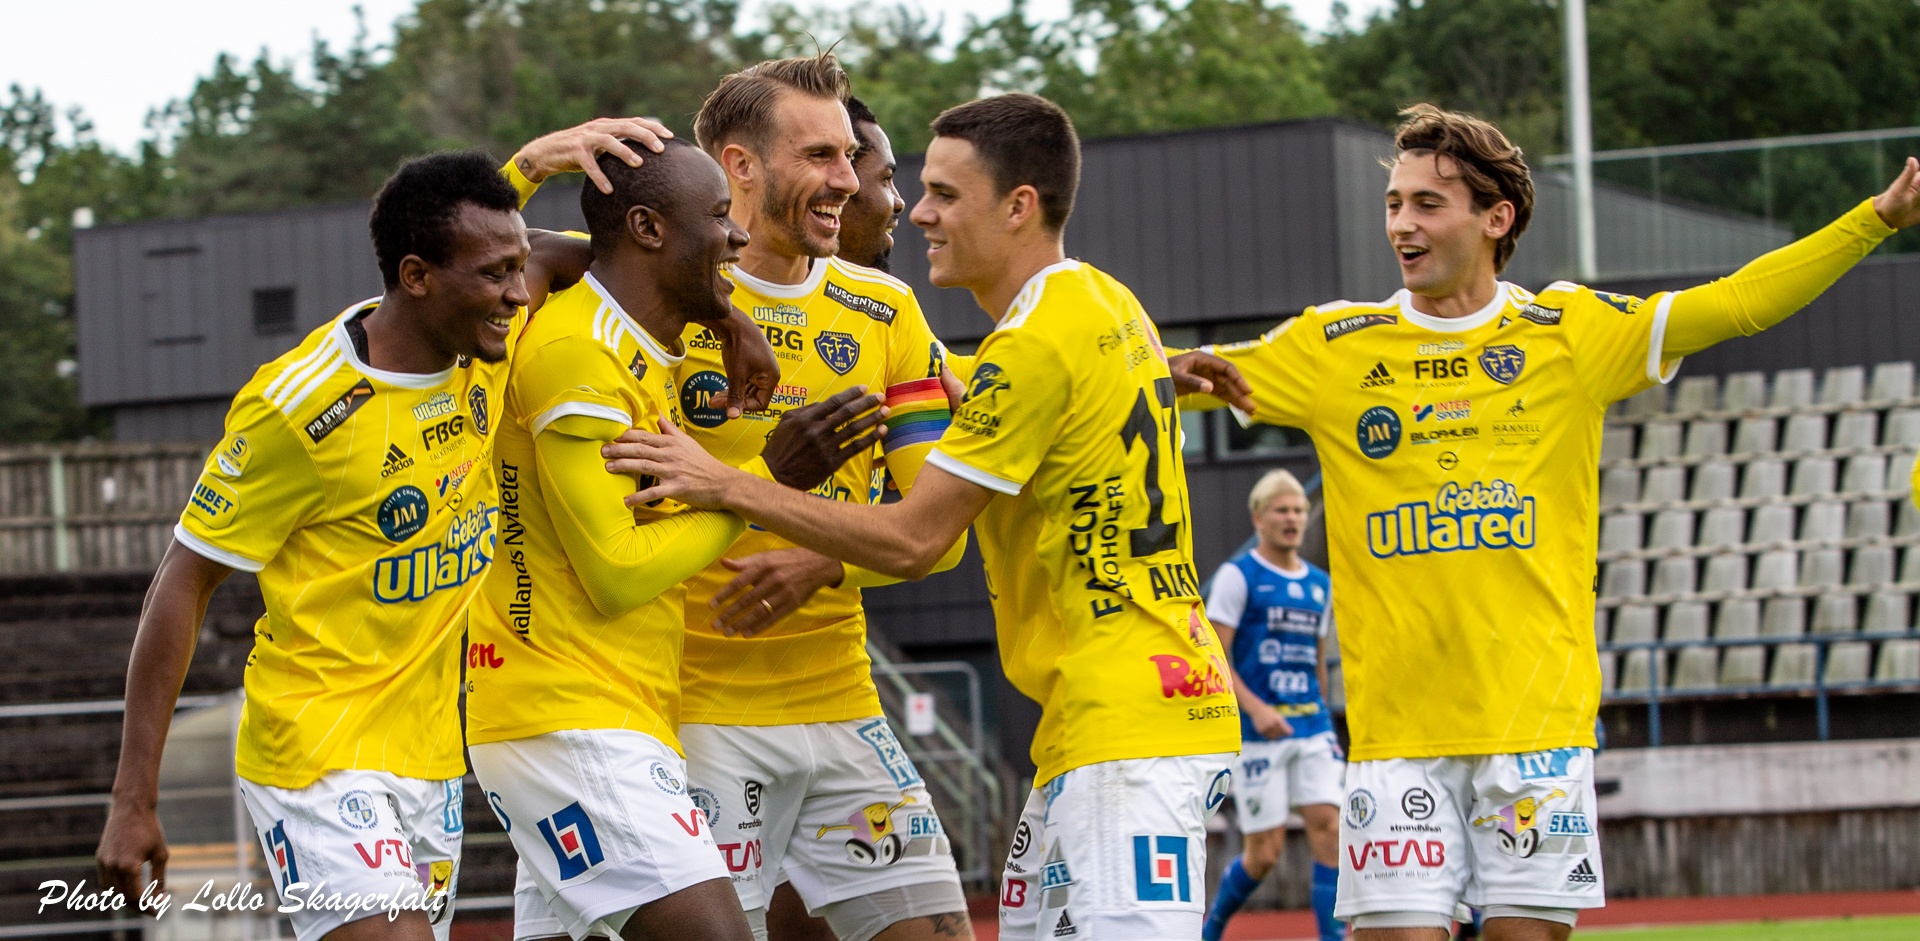 FFF vidare i cupen efter sanslöst drama i Uddevalla!